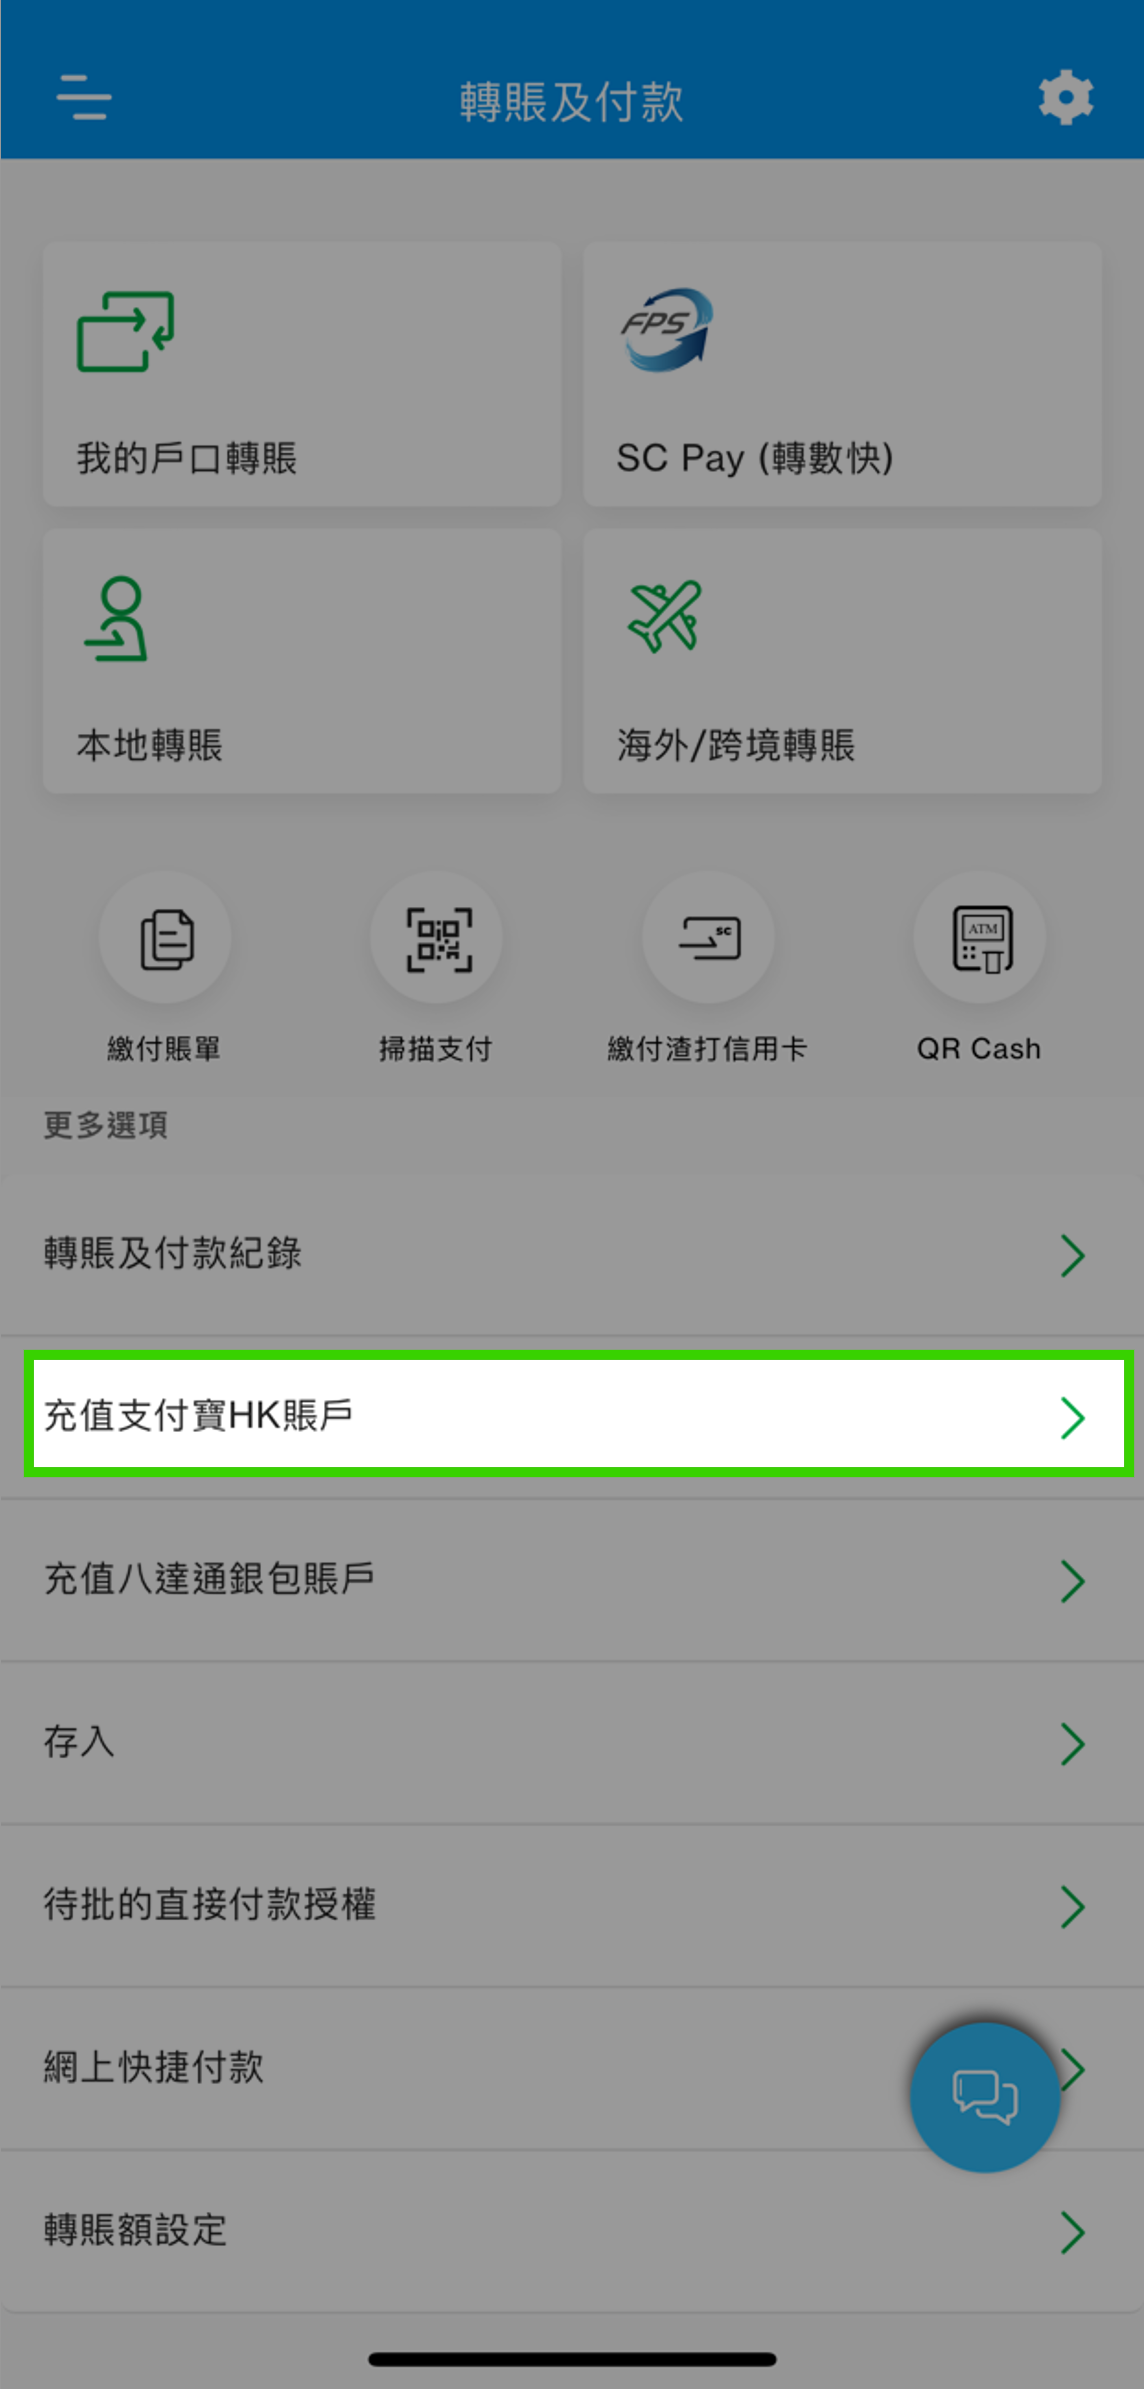 您需事先於網上理財新増AlipayHK賬戶以進行充值。登入SC Mobile App後，前往「轉賬及付款」然後選擇「充值支付寶HK賬戶」